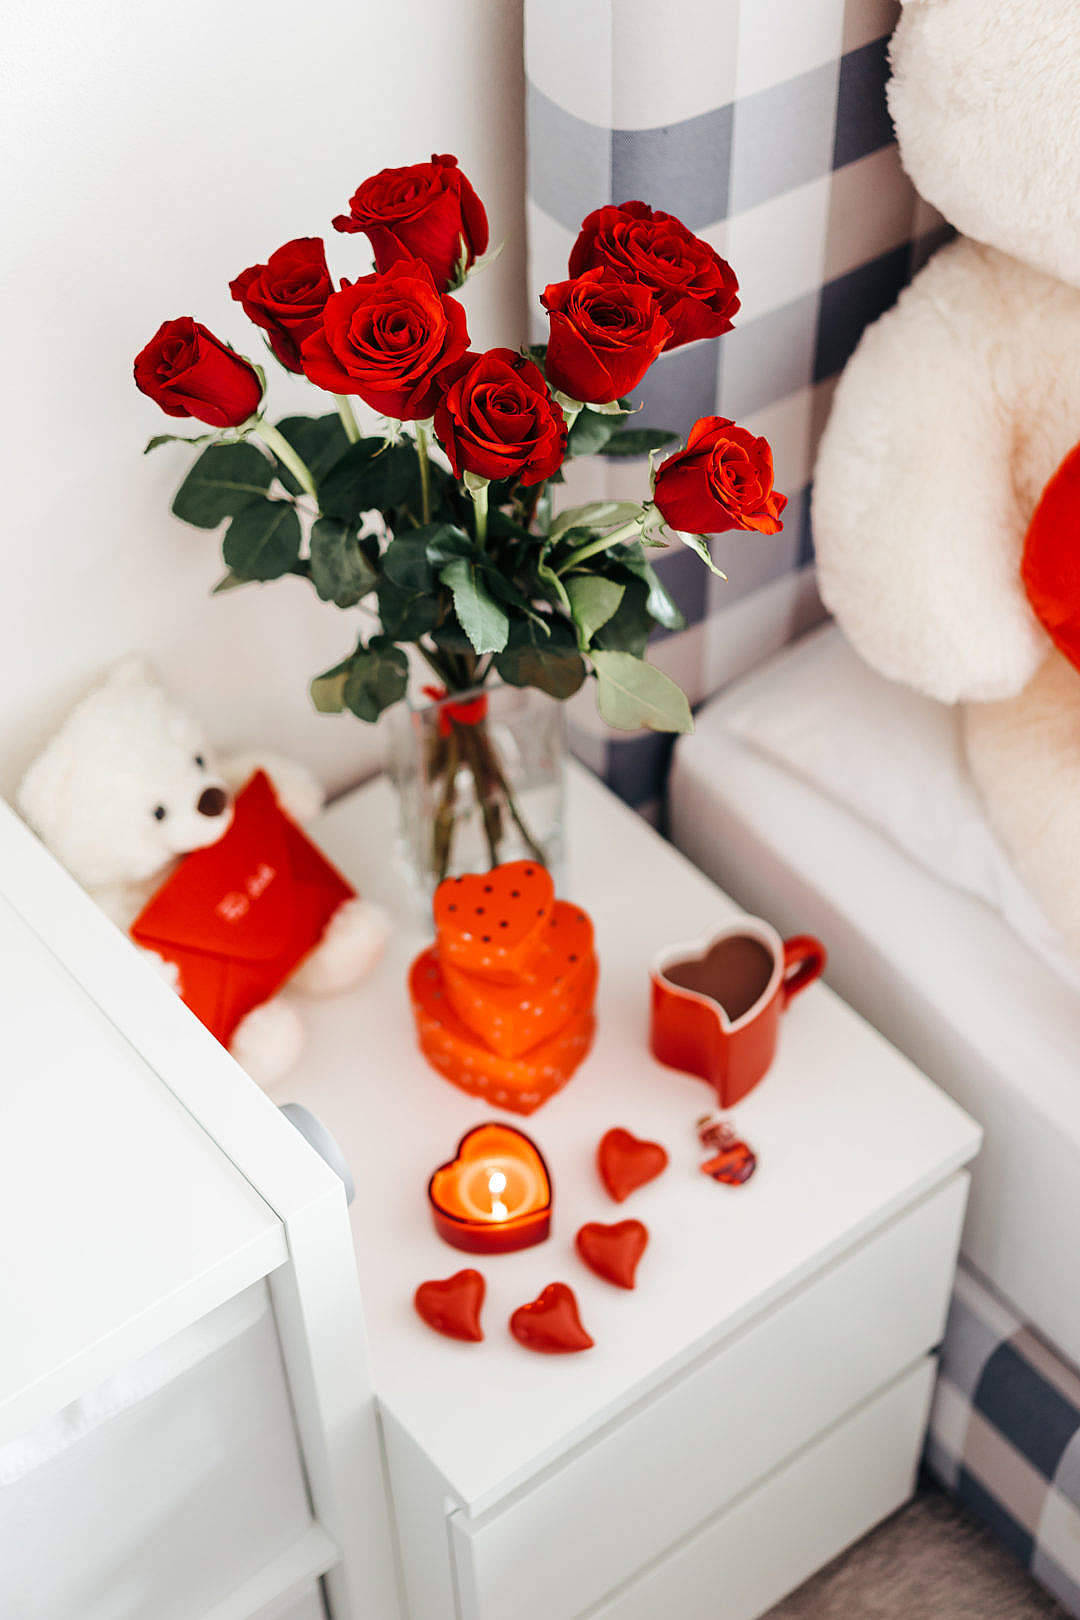 Romantischeliebesblumen - Rosen Auf Dem Nachttisch. Wallpaper